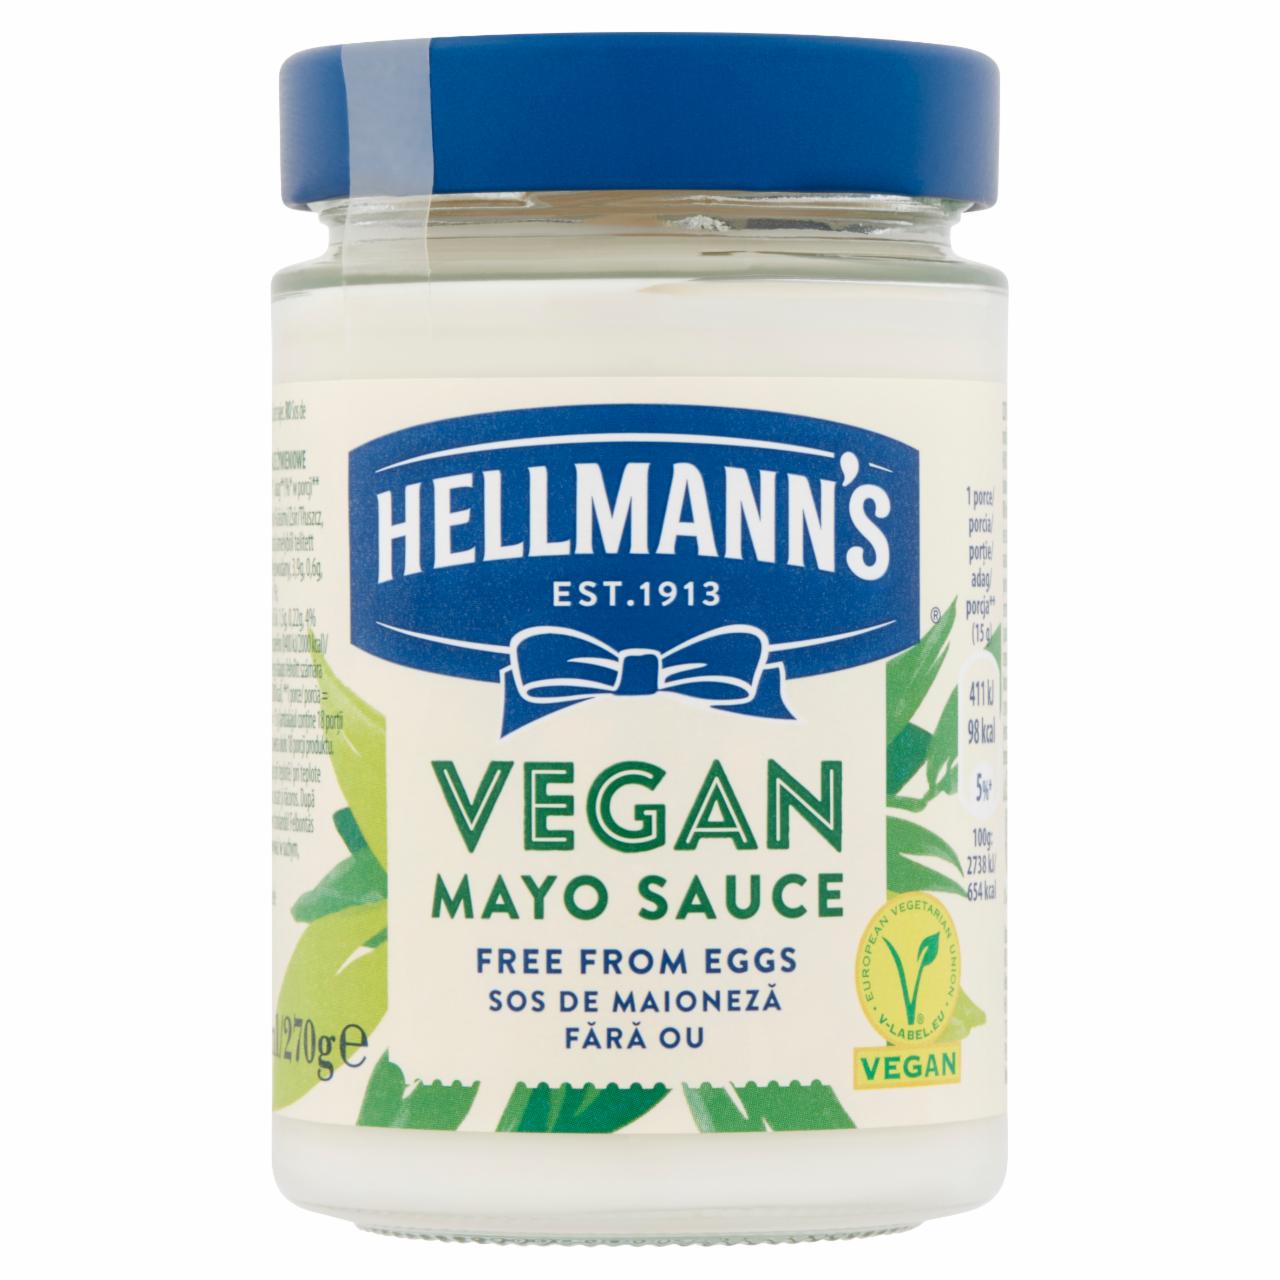 Képek - Hellmann's vegán majonéz 270 g